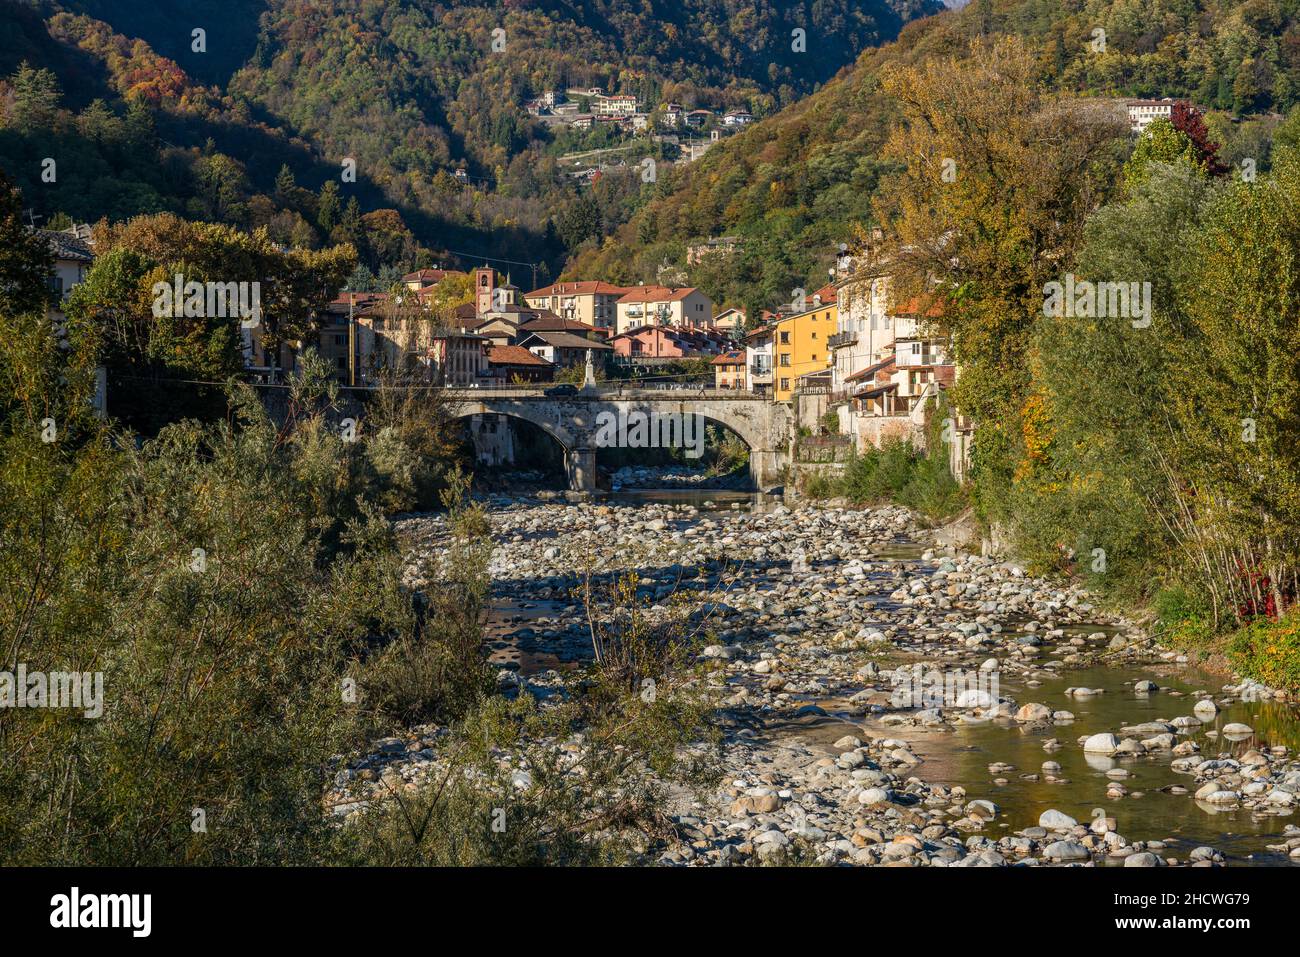 Das schöne Dorf Varallo, während der Herbstsaison, in Valsesia (Sesia Valley). Provinz Vercelli, Piemont, Italien. Stockfoto